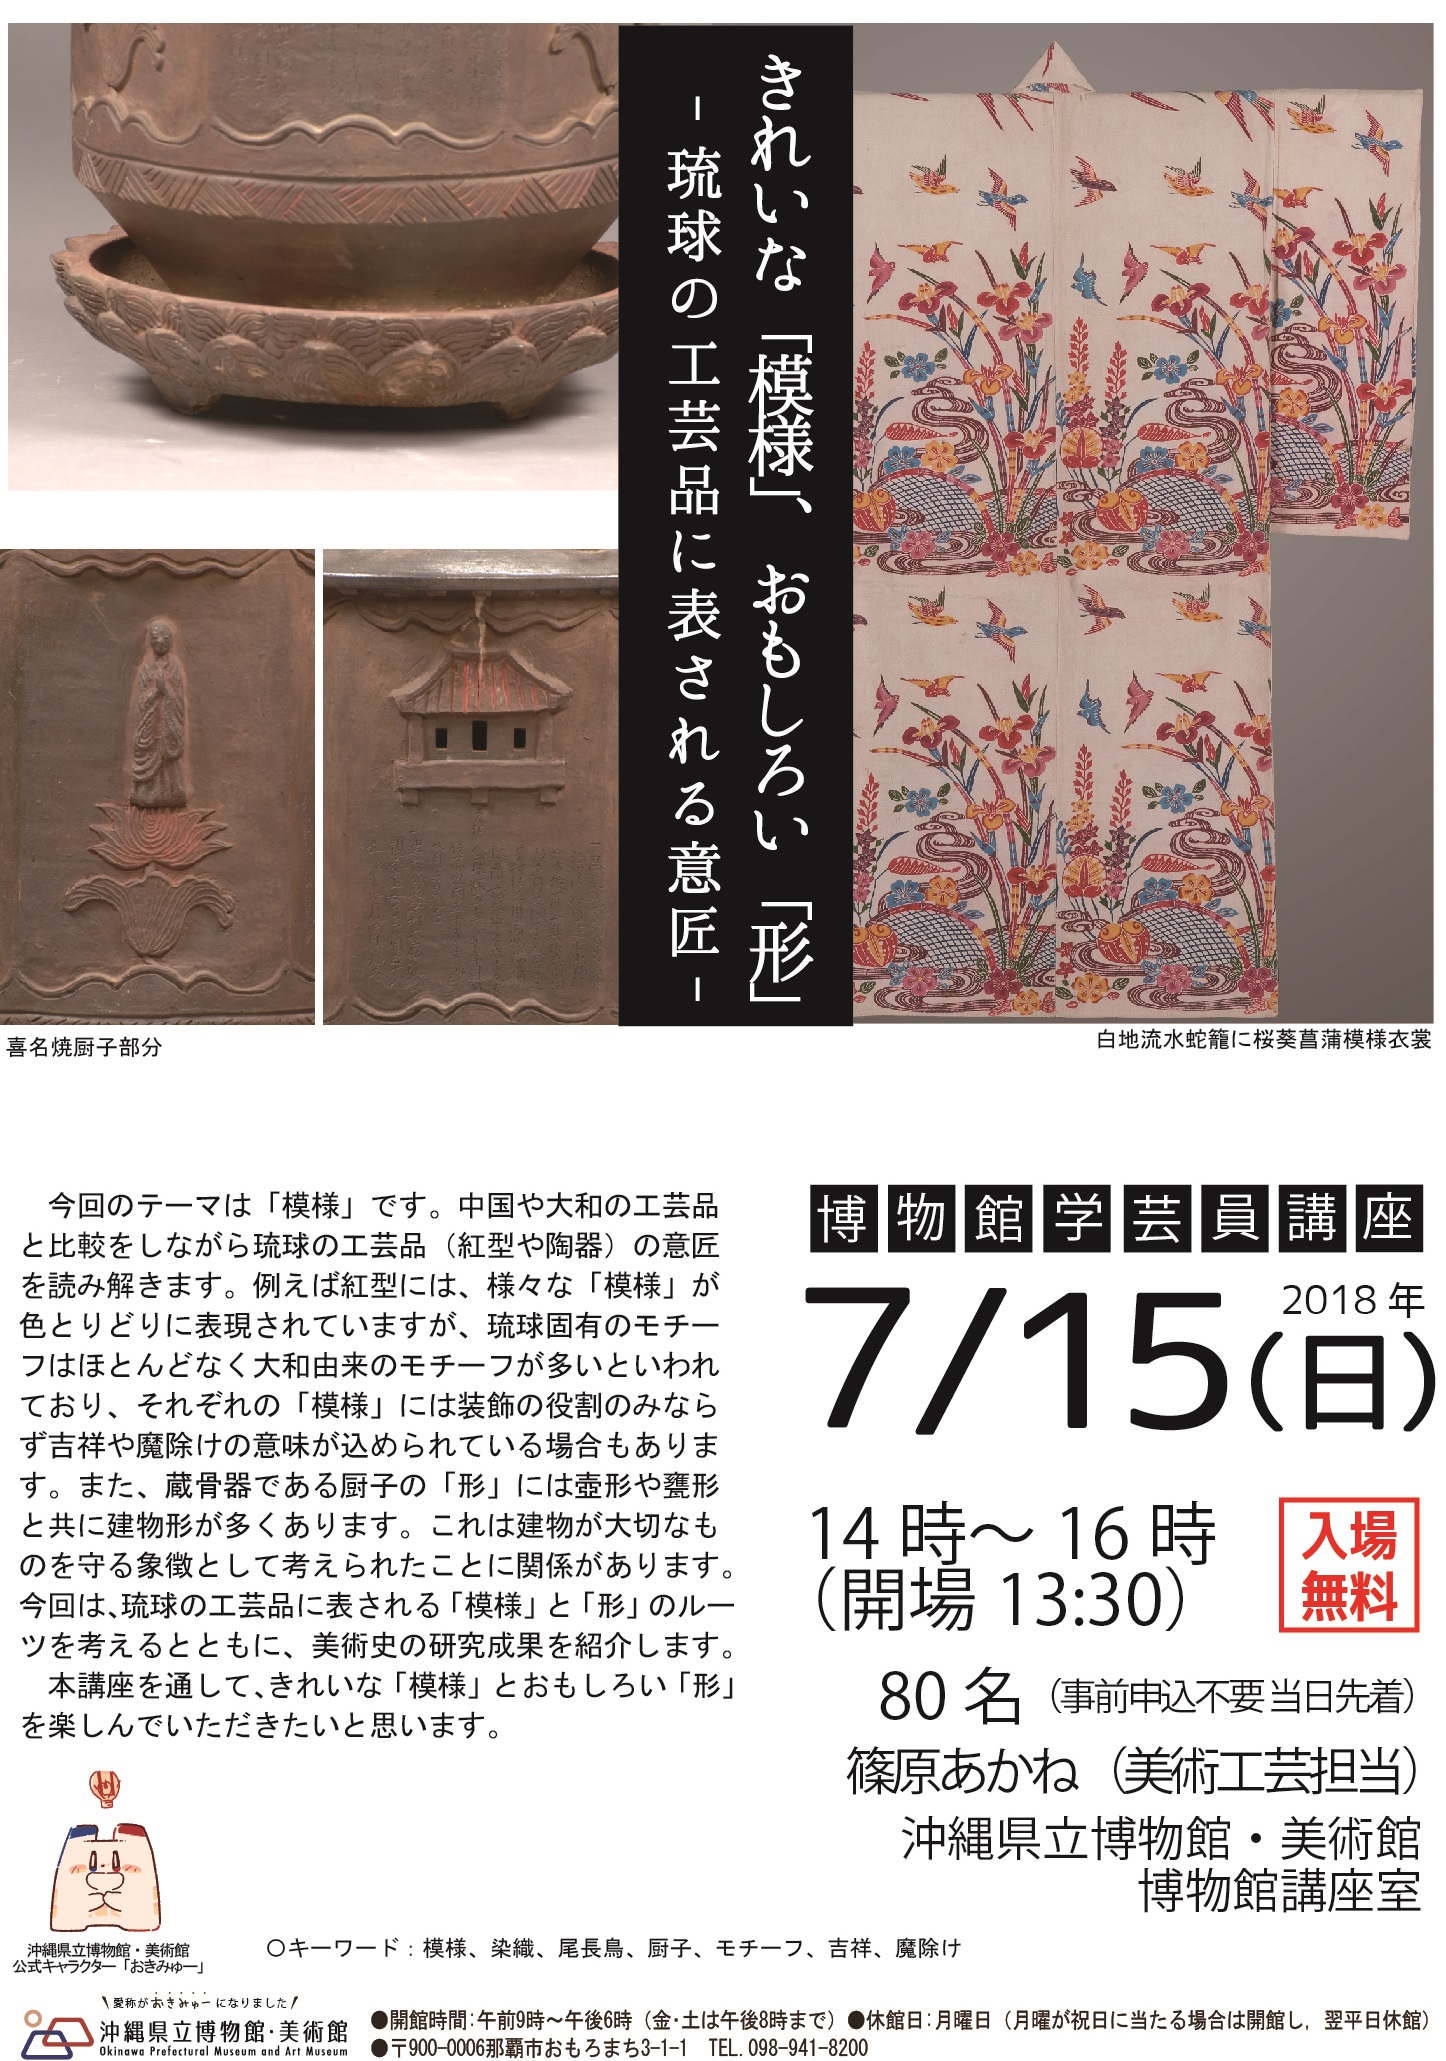 博物館学芸員講座「きれいな【模様】、おもしろい【形】－琉球の工芸品に表される意匠－」